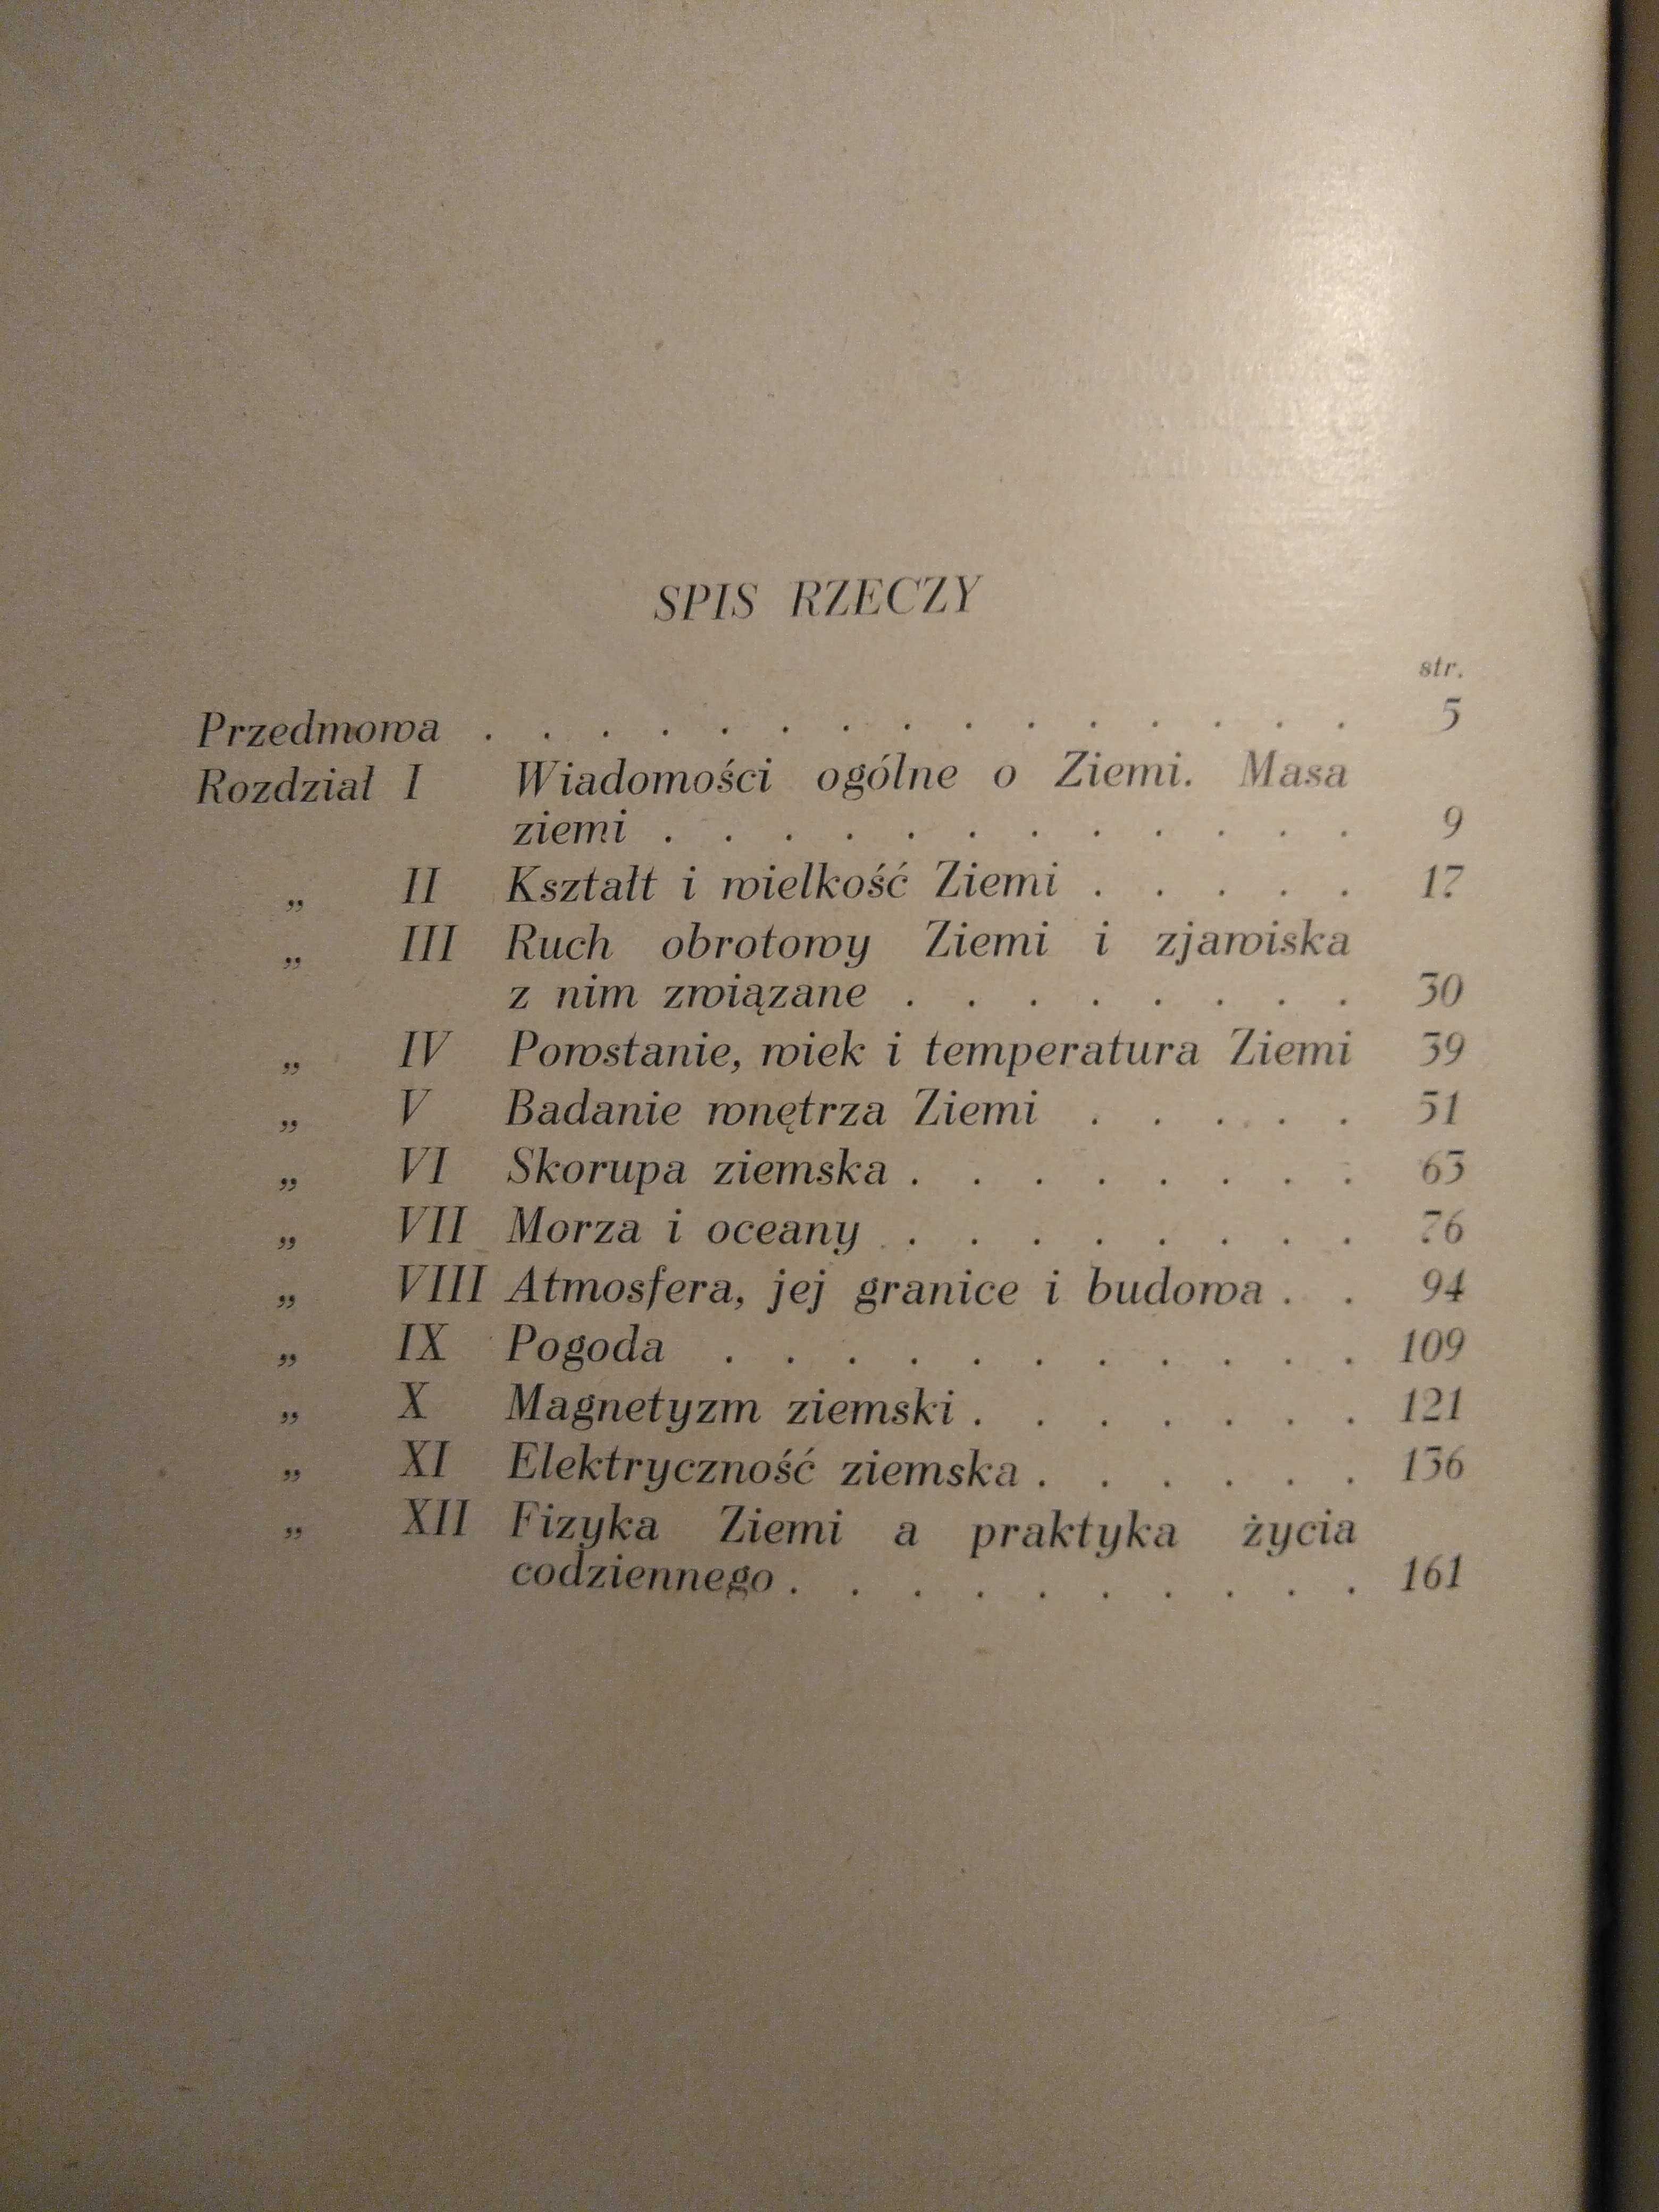 Wśród zjawisk geofizycznych - Zofia Kalinowska - 1938